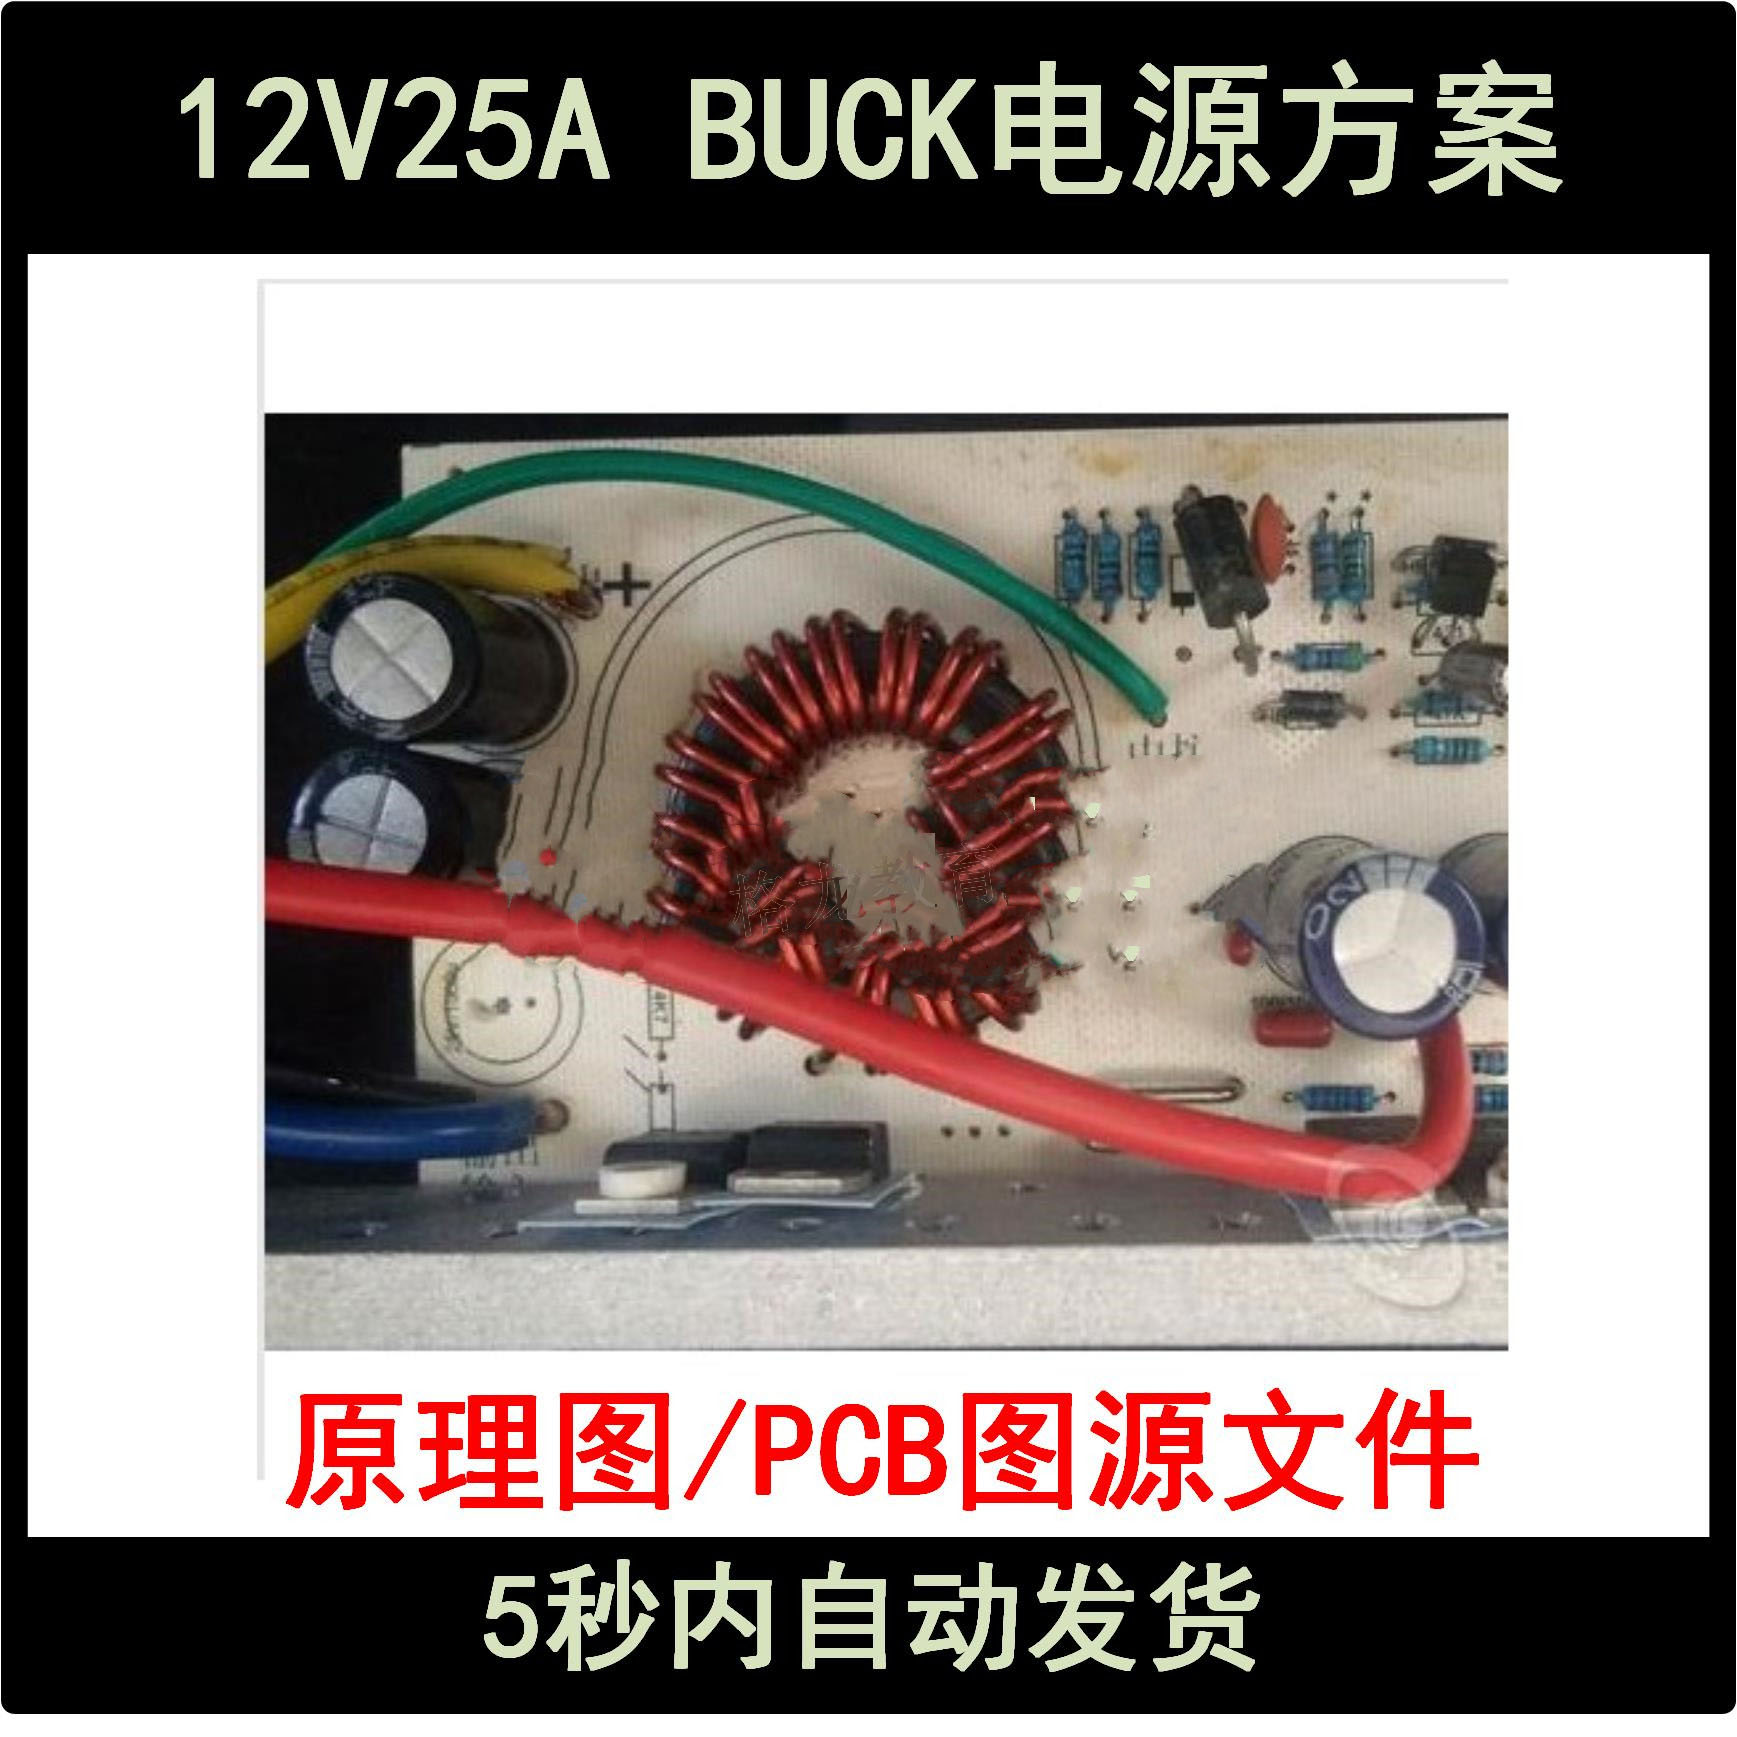 12V25A/BUCK降压型开关电源设计方案学习资料DCDC变换器电路图PCB